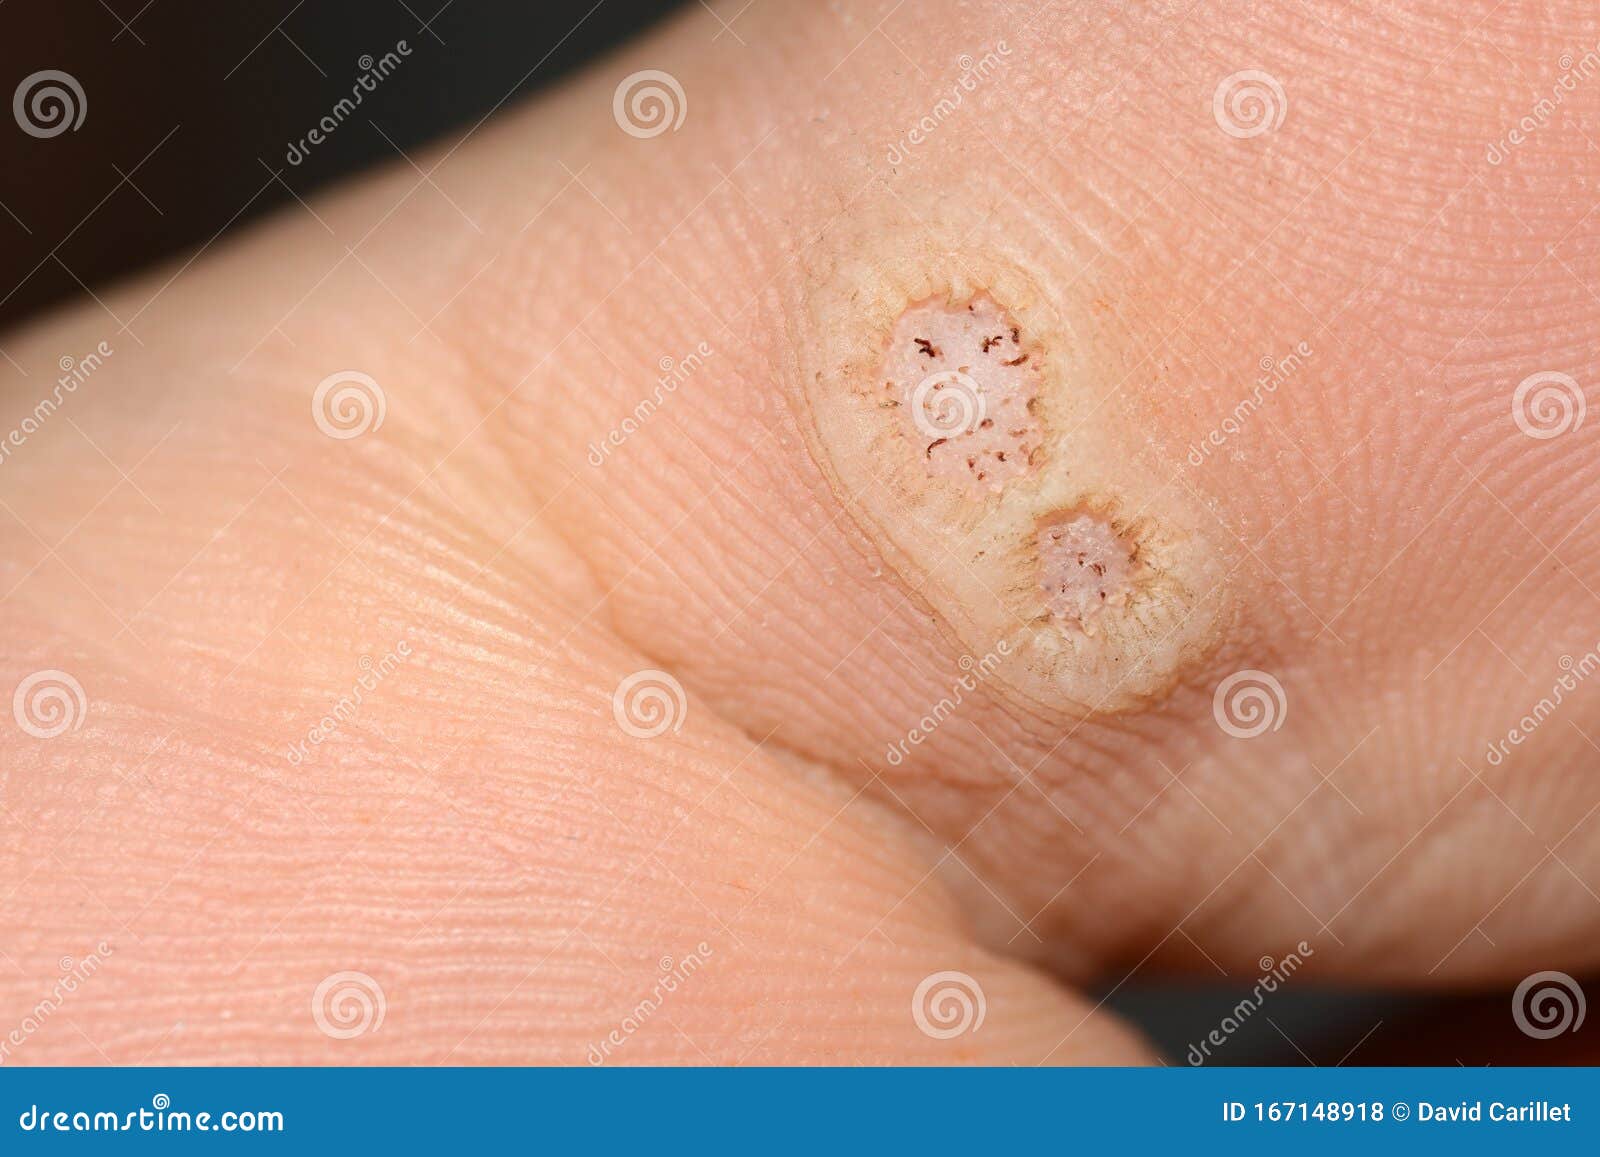 papilloma virus warts